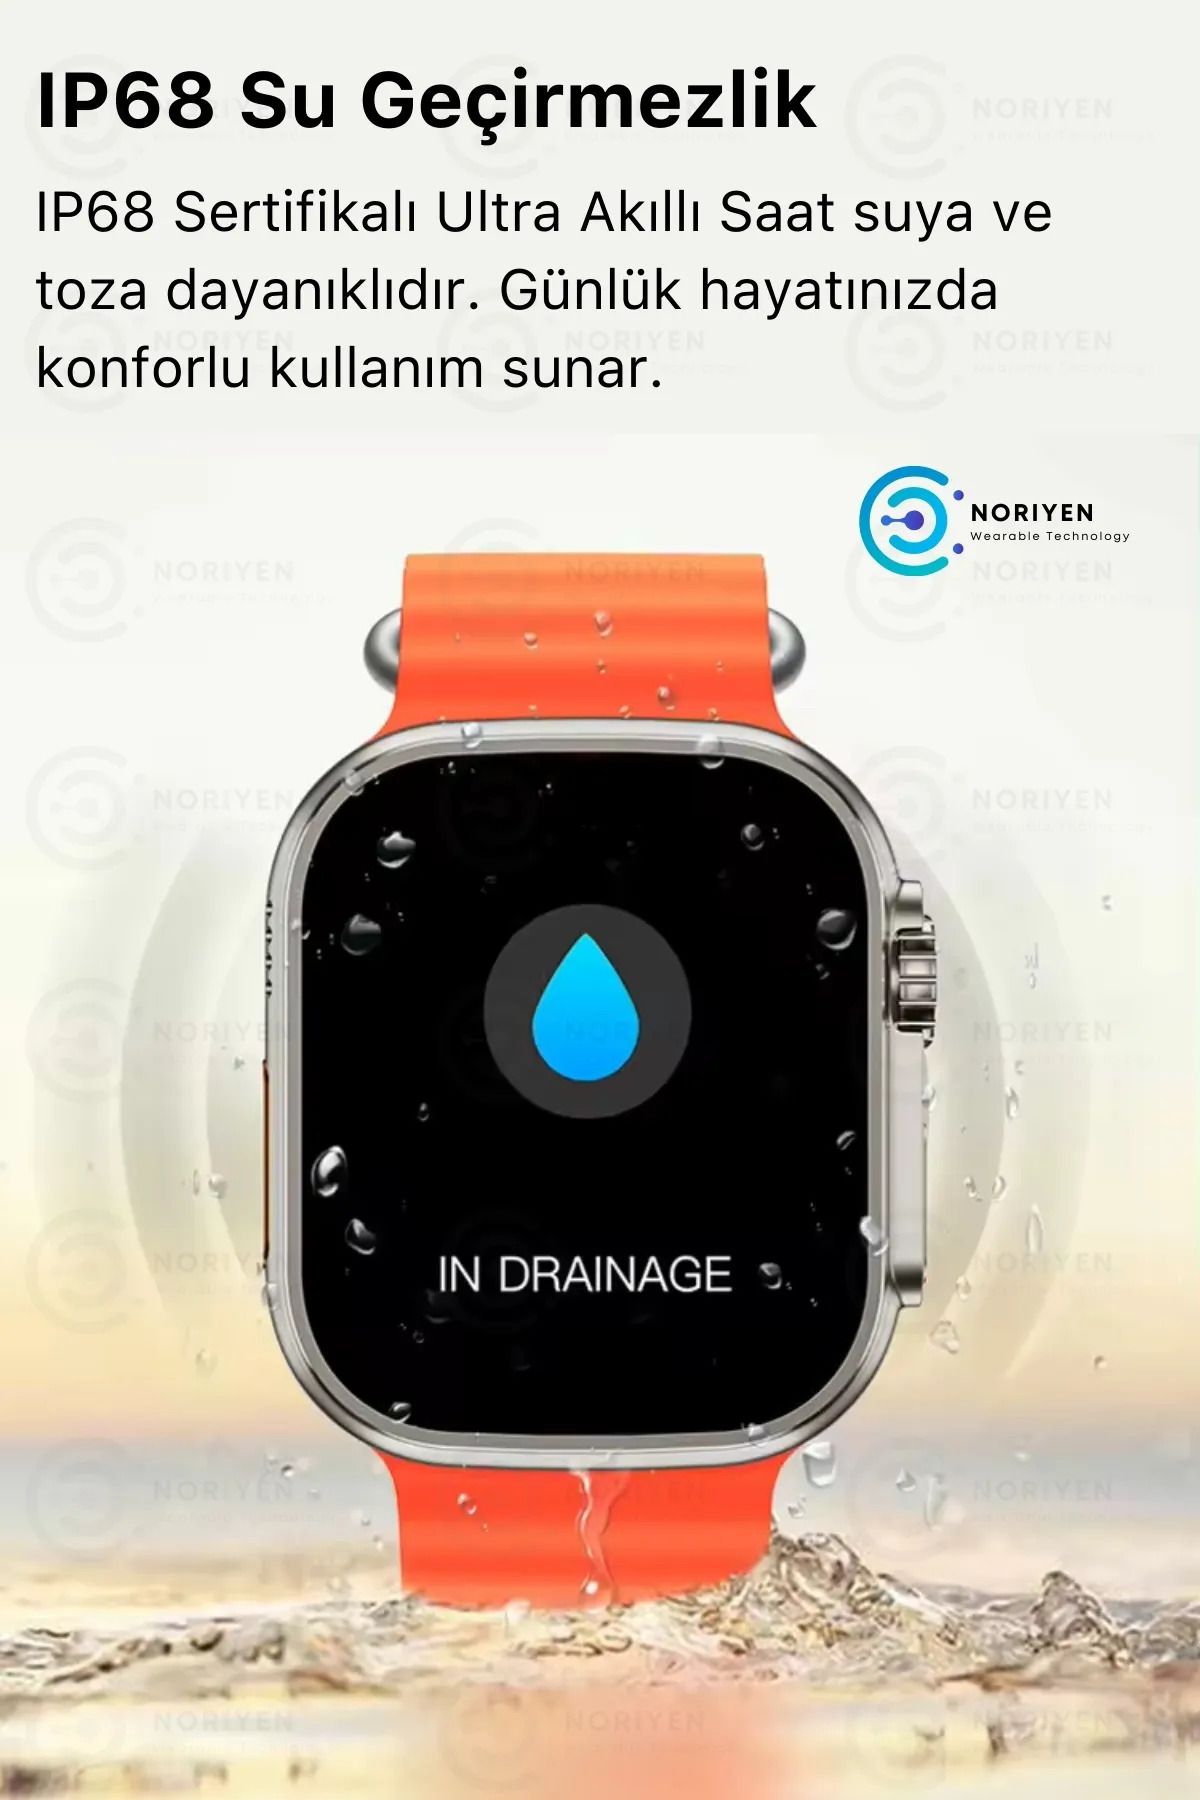 Noriyen Watch 8 Ultra Ios Android Uyumlu 2.09 Inç Çift Kordonlu Spor Ve Sağlık Sensörlü Akıllı Saat